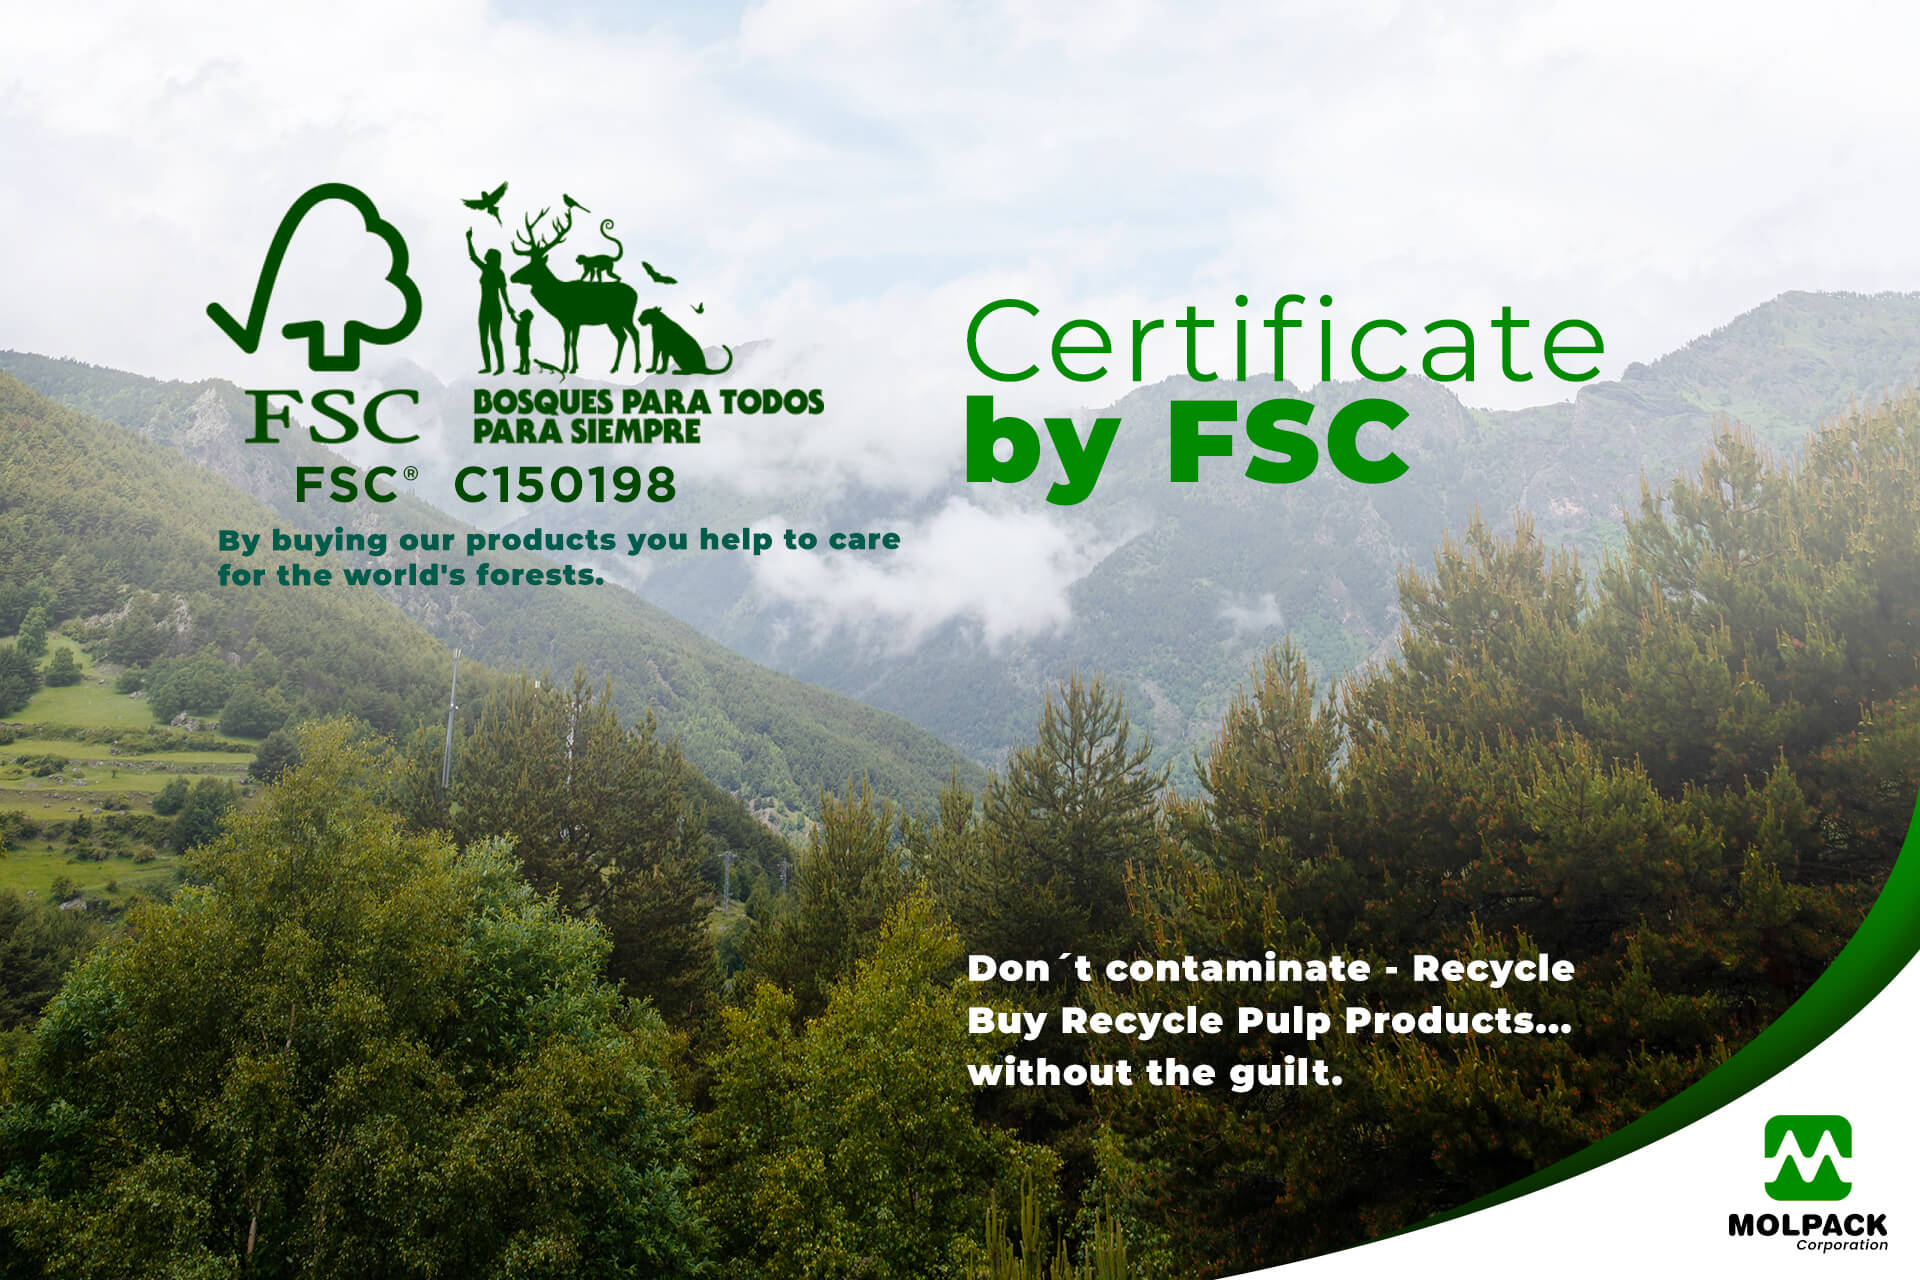 Certificate by FSC